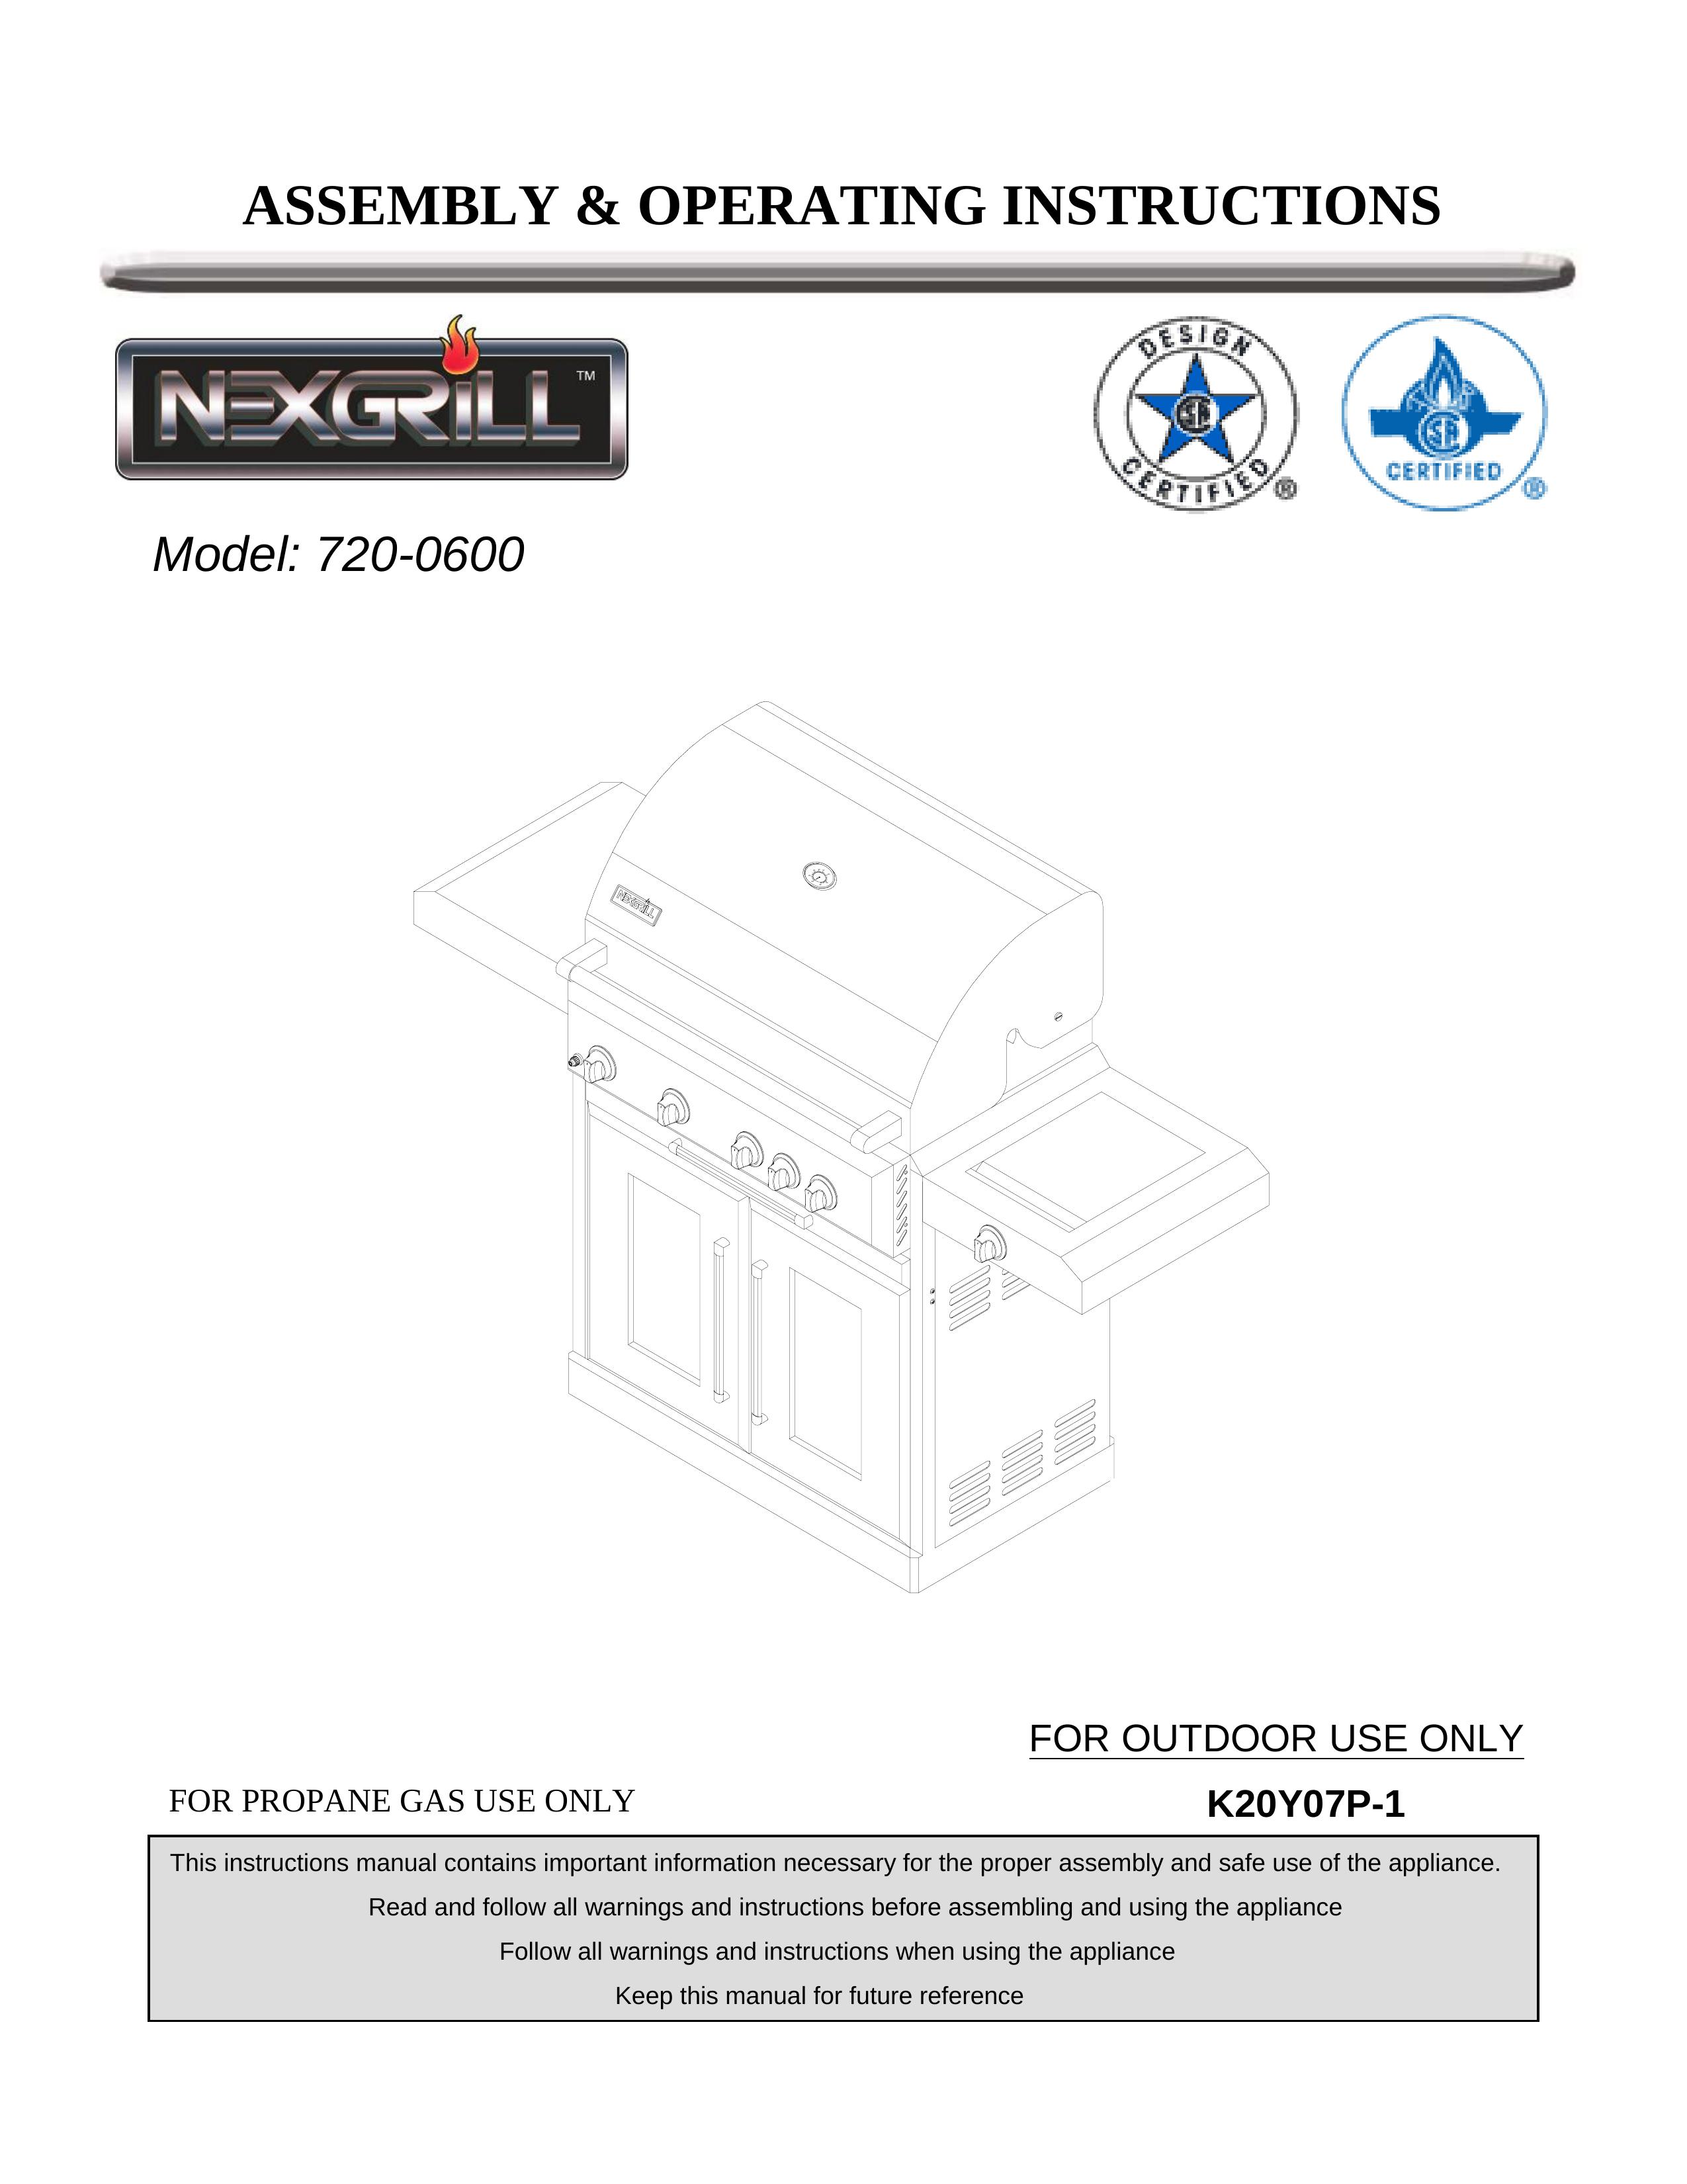 Nexgrill 720-0600 Gas Grill User Manual